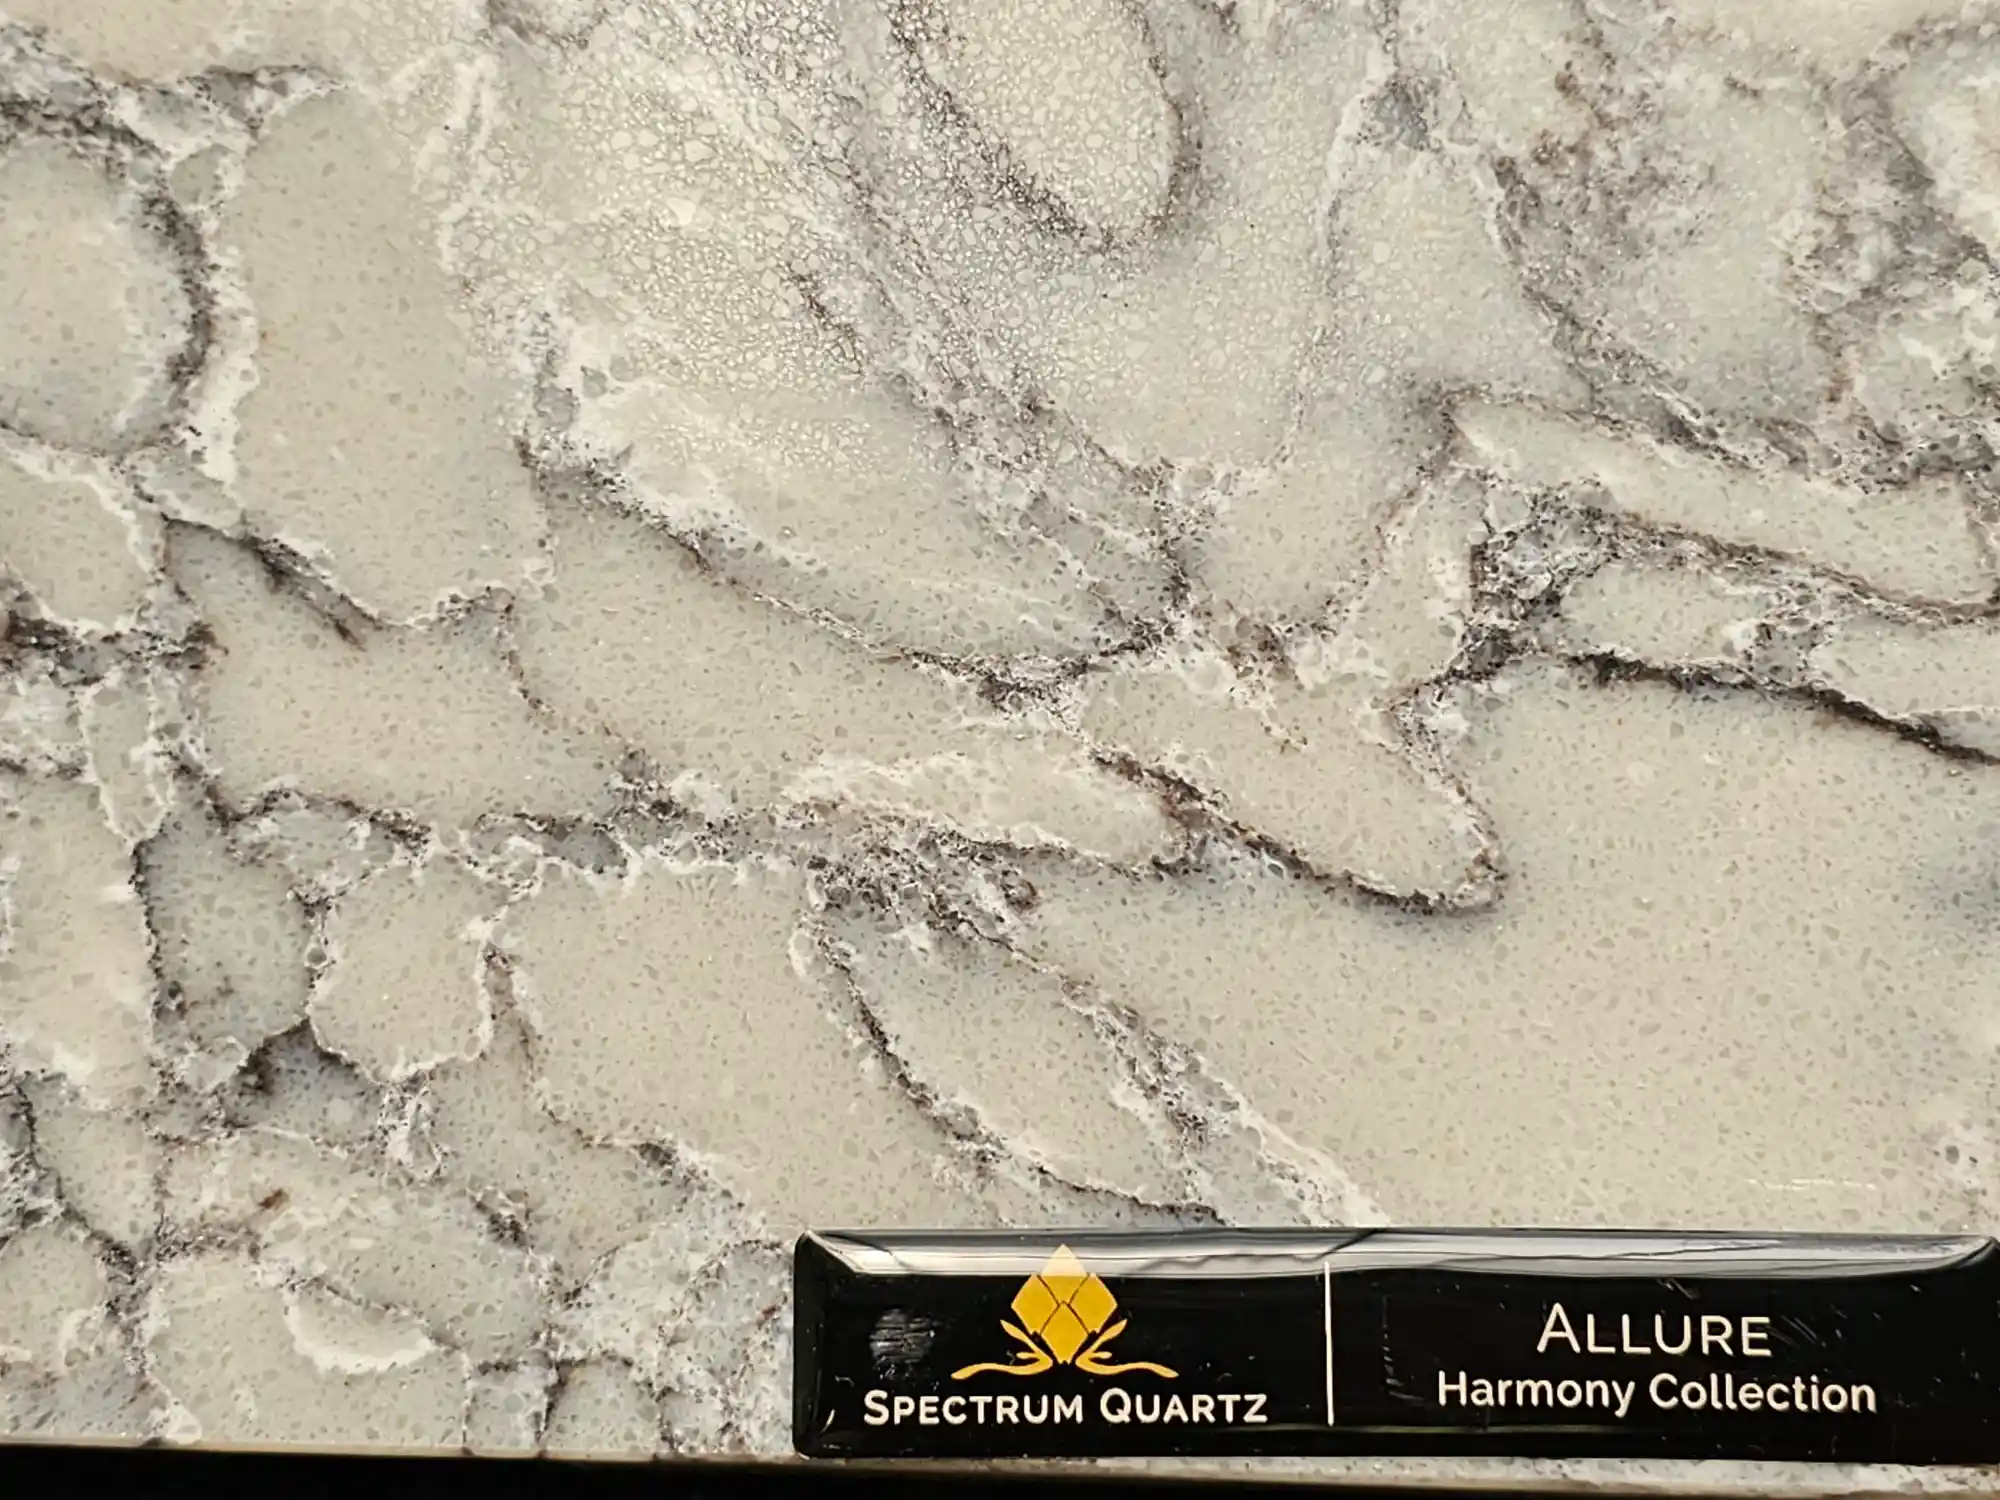 Allure spectrum quartz countertop